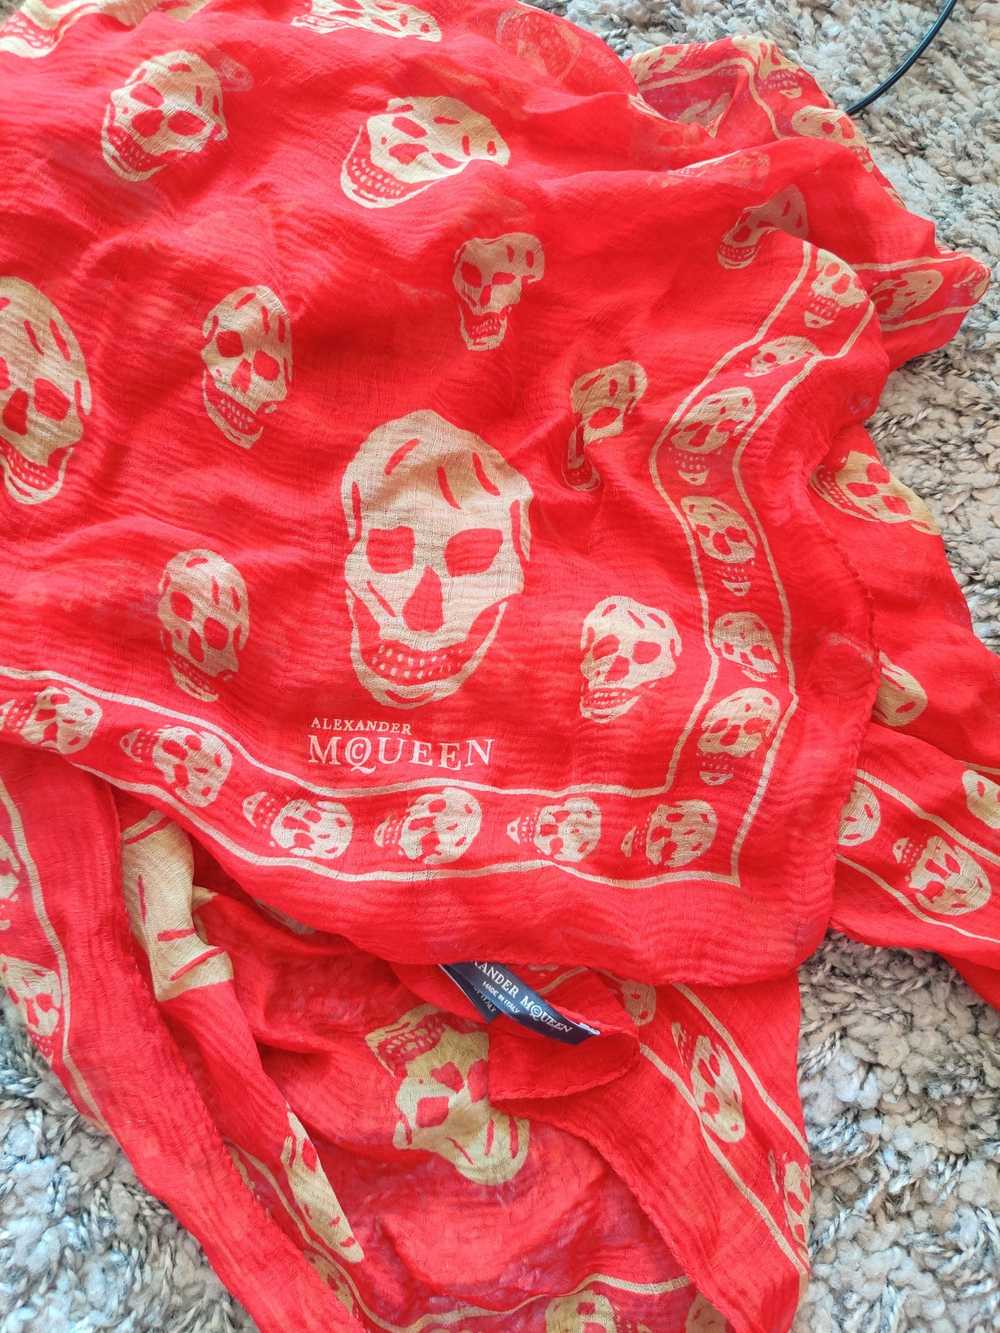 Alexander McQueen Alexander McQueen skull scarves - image 1